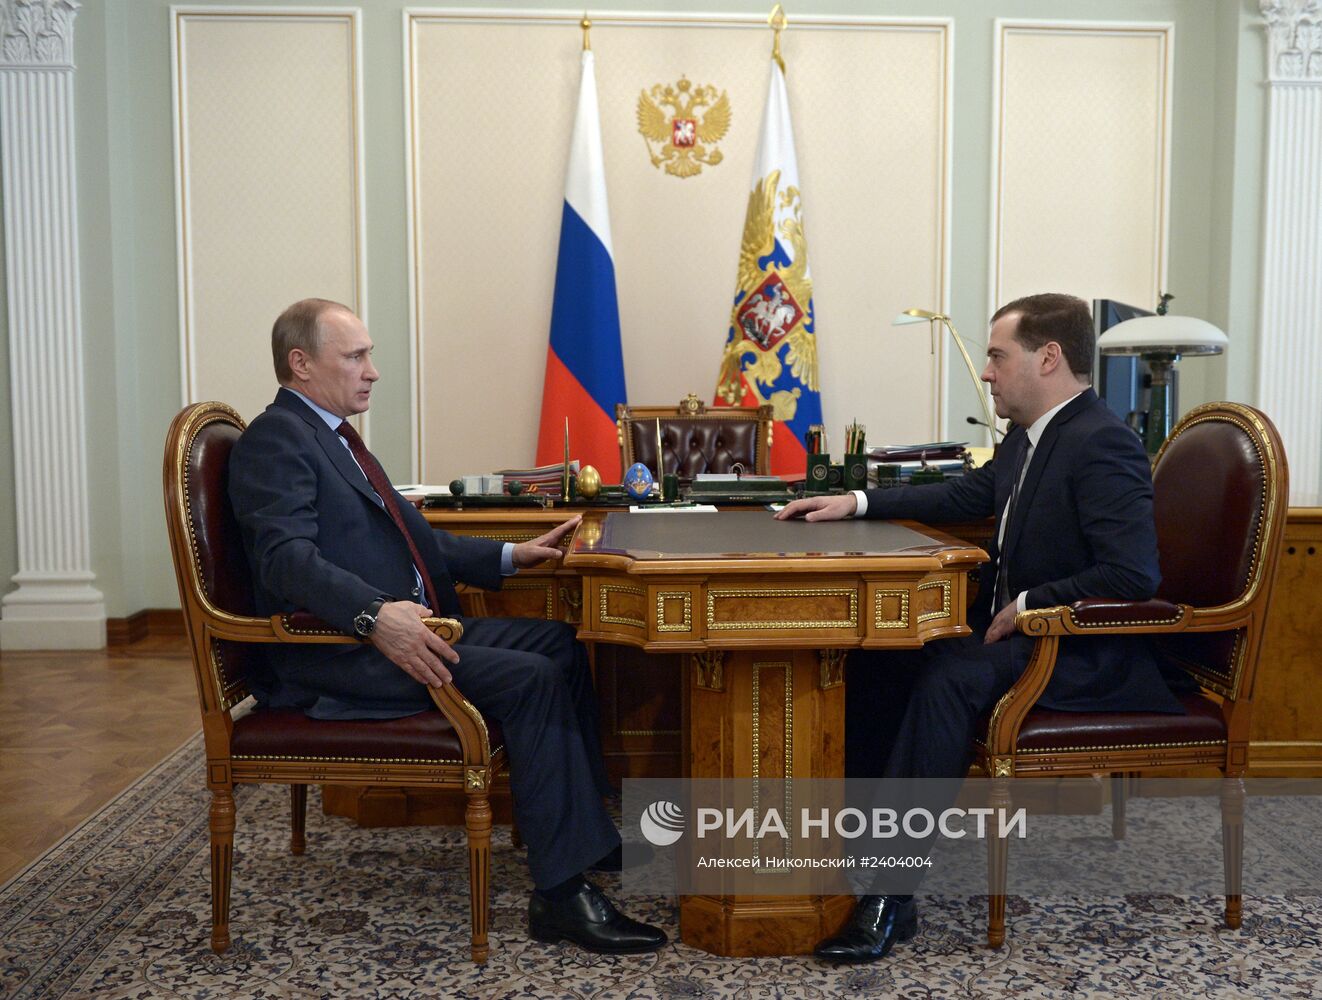 В.Путин провел рабочую встречу с Д.Медведевым